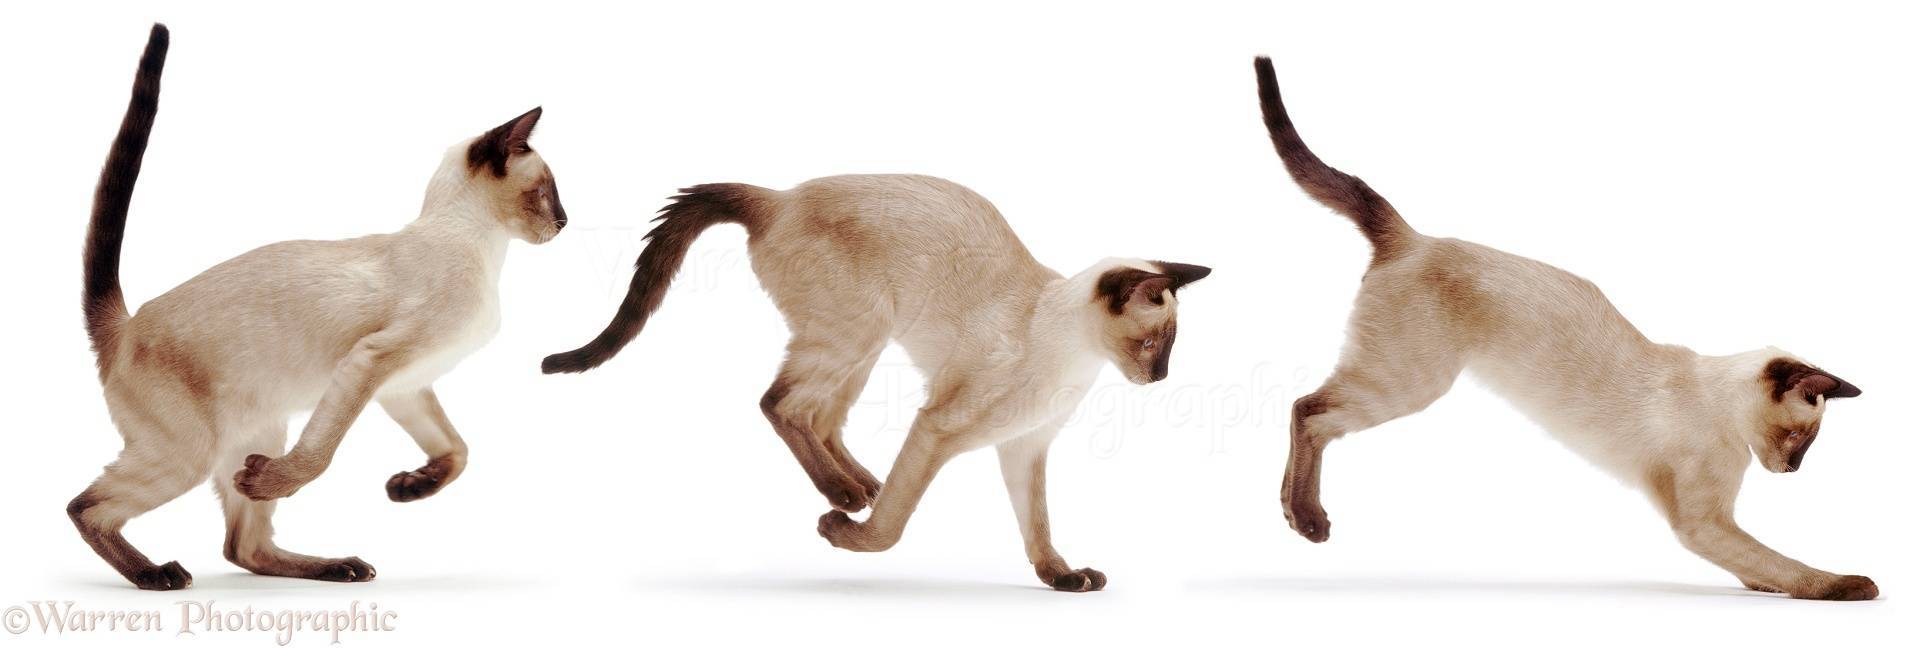 Почему кот трясет хвостом но не метит. почему коты дергают хвостом. общение головой с помощью головы